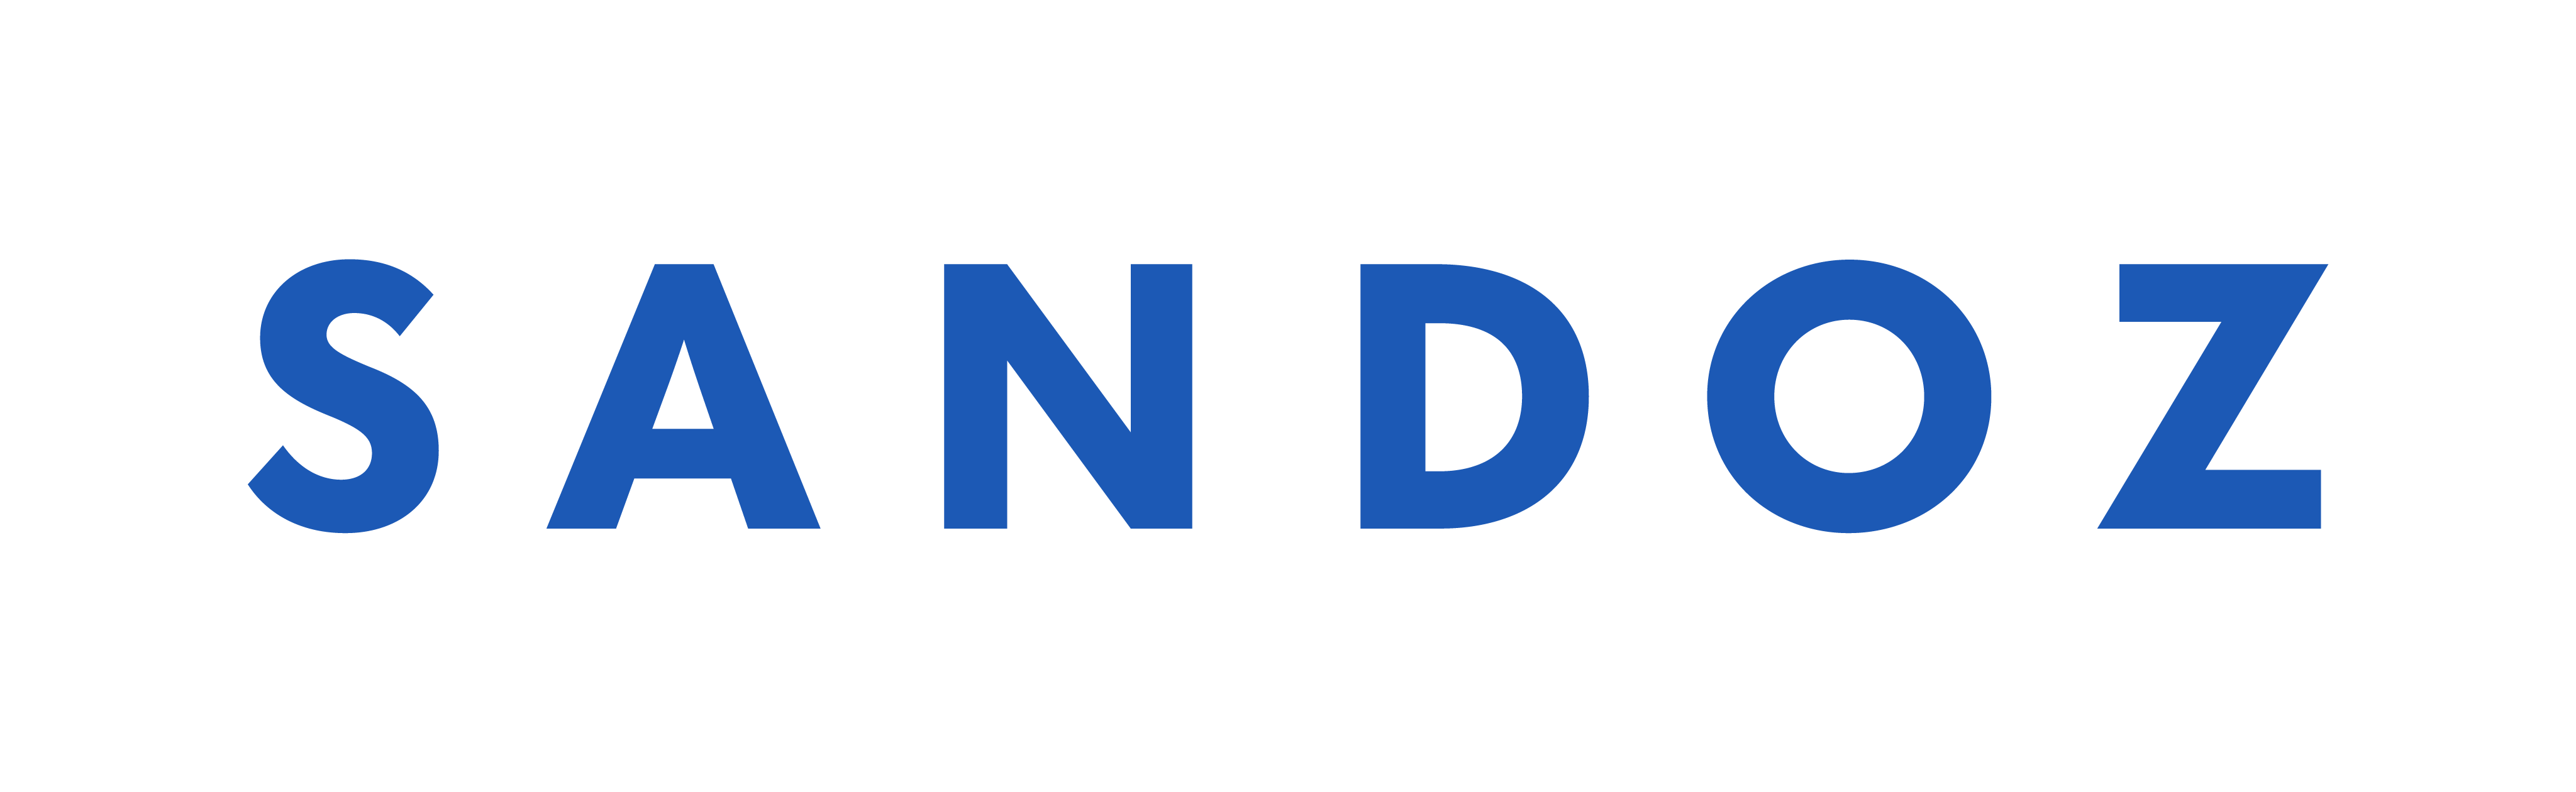 Logotipo Sandoz